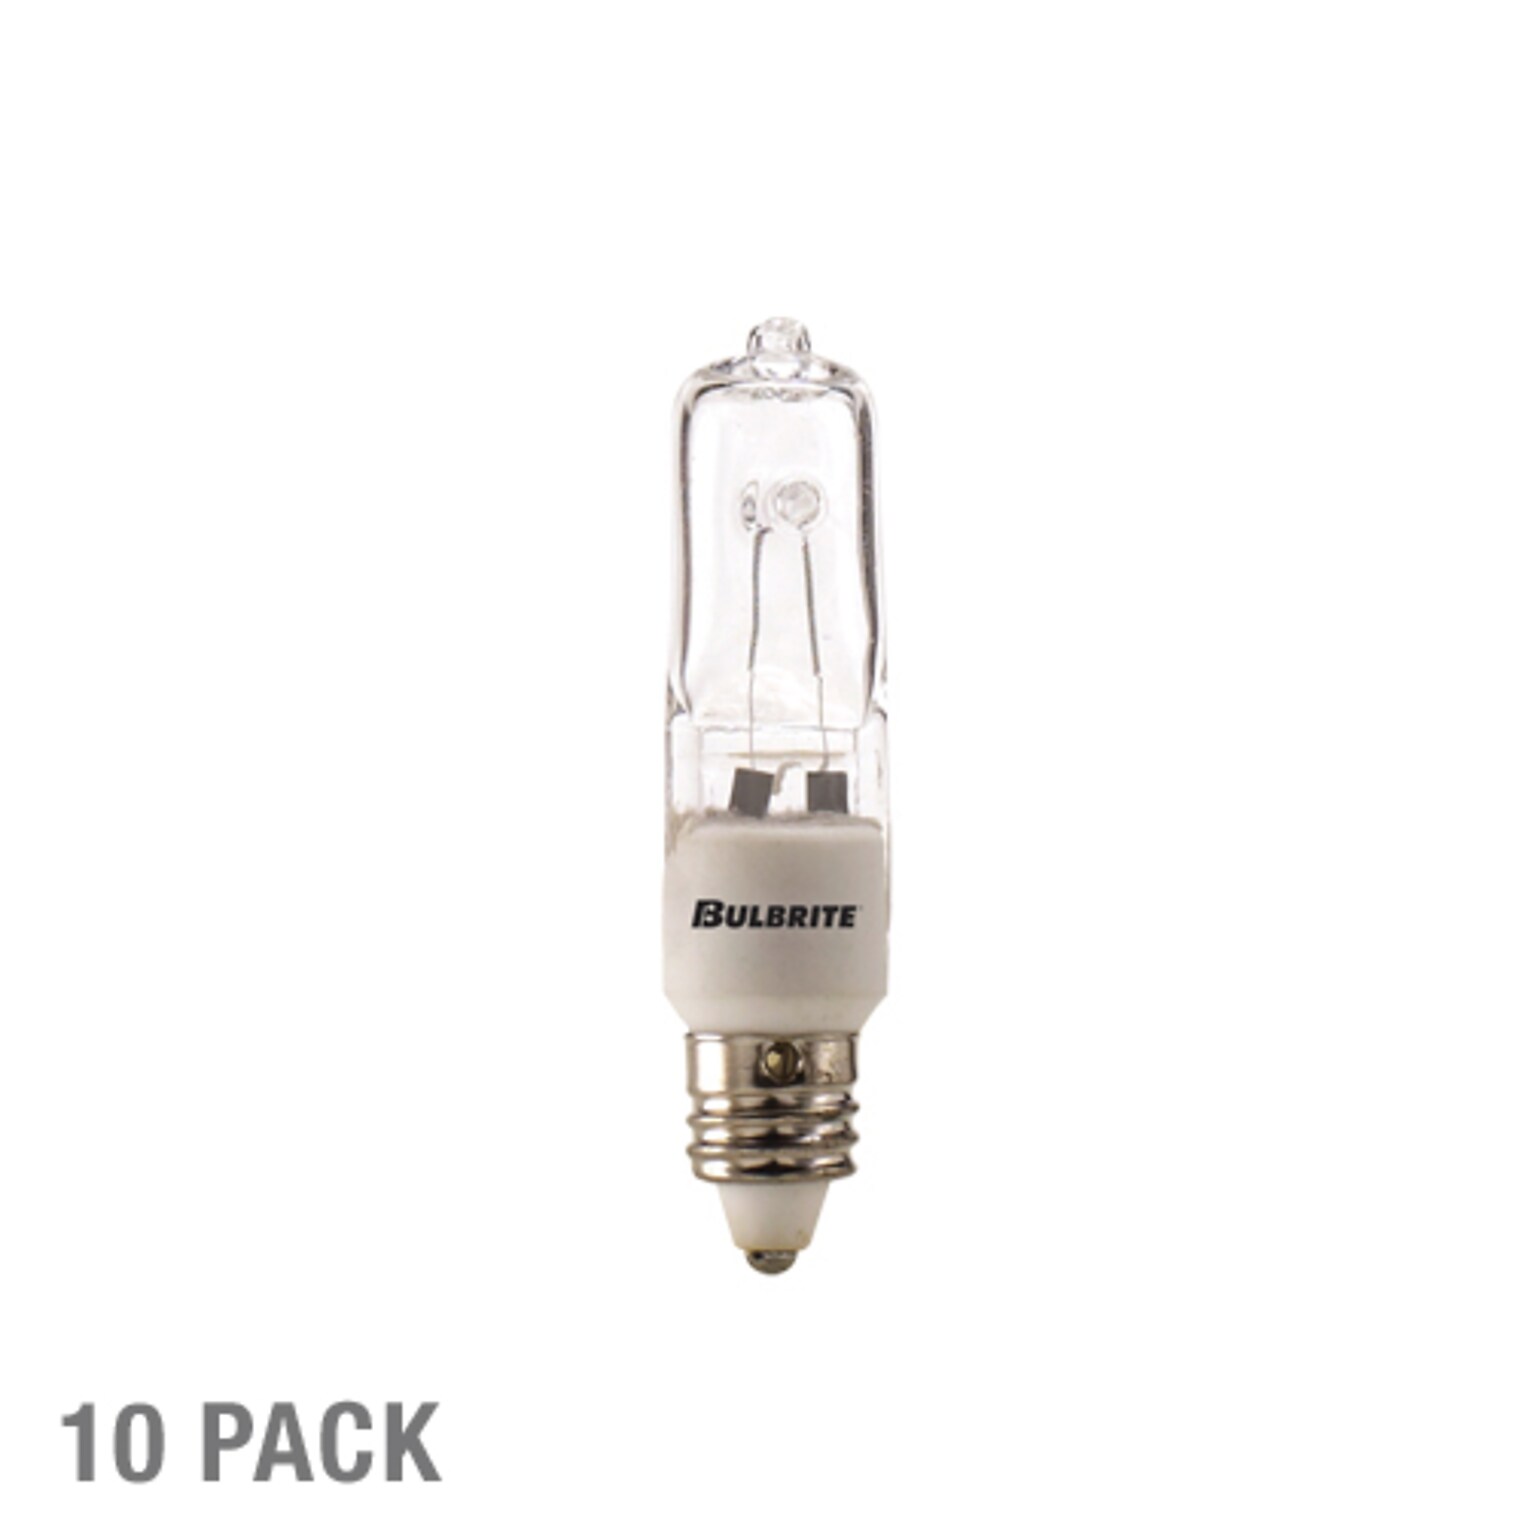 Bulbrite 100 Watt 120V Dimmable Clear T4 Halogen Mini Light Bulbs, 2900K Soft White Light, 5/Pack (860800)